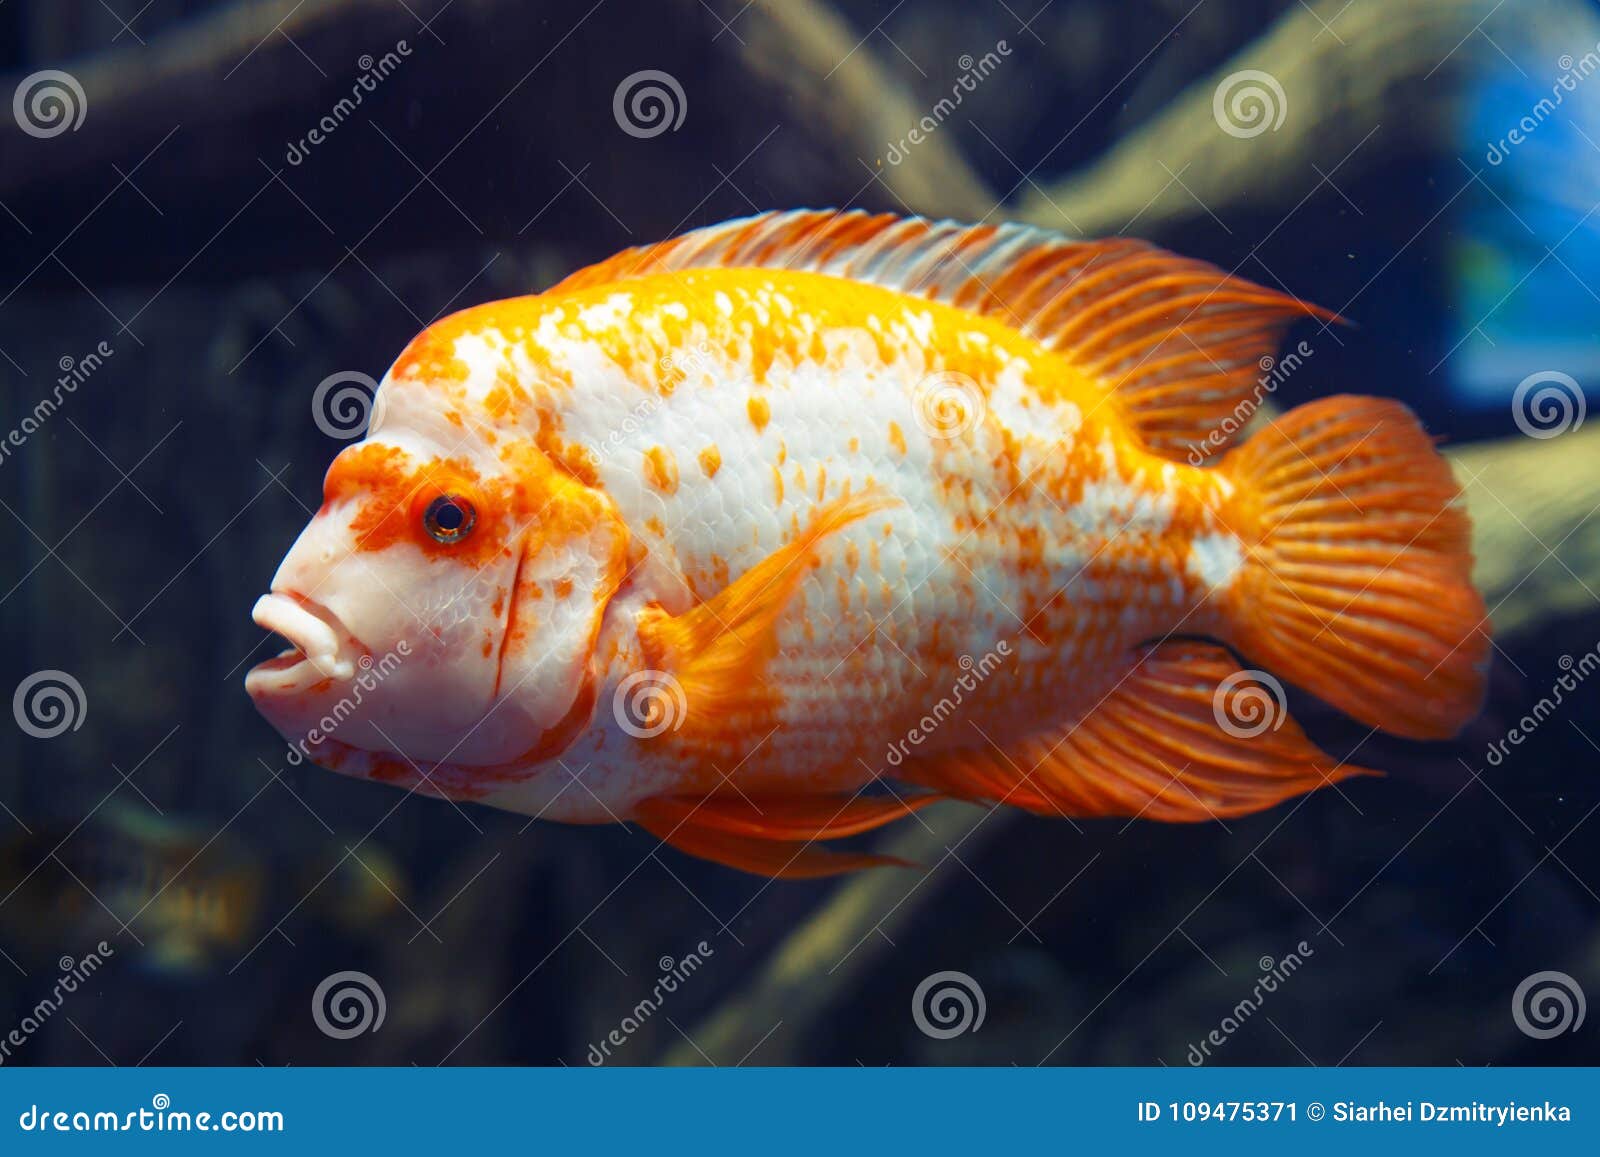 pesce dorato e bianco acqua profonda blu scuro di mare arancio sul fondale marino rosso magico